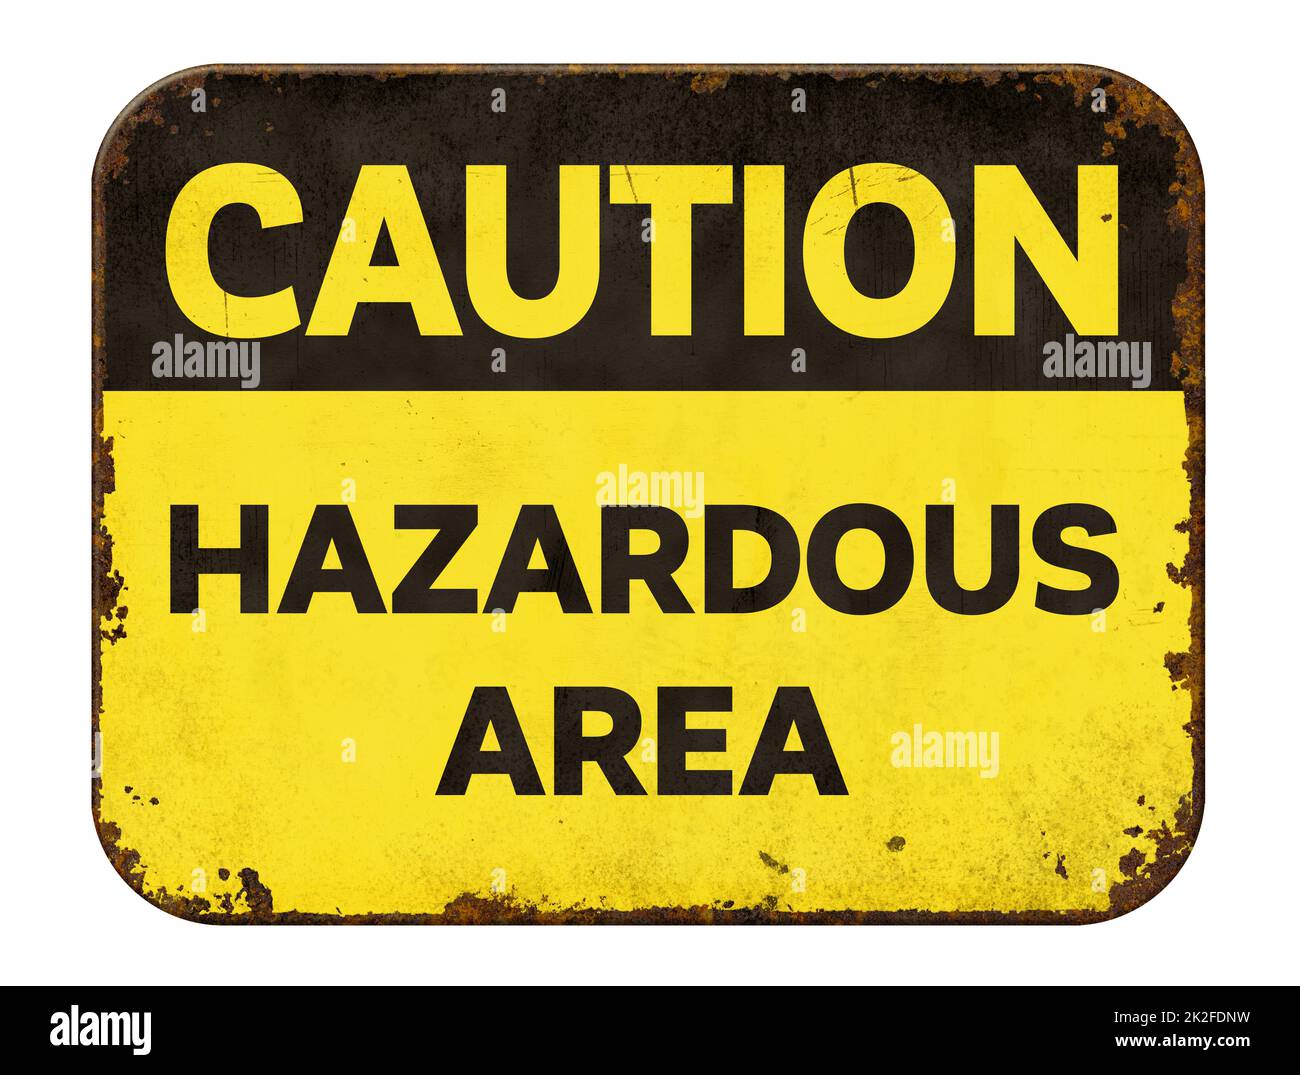 Vintage tin caution sign on a white background - Hazardous Area Stock Photo